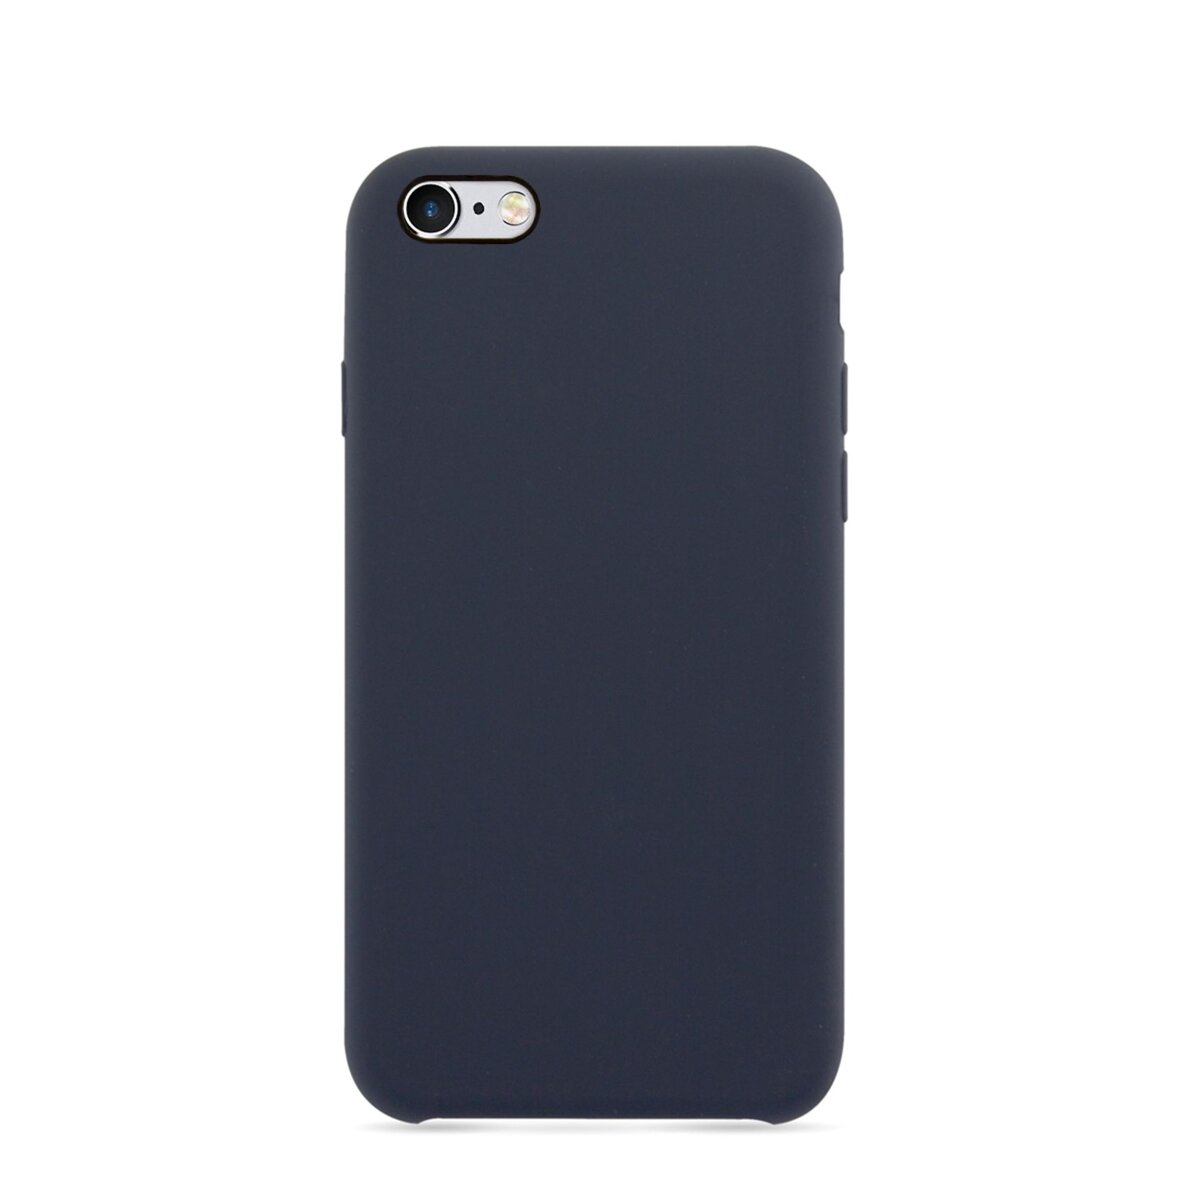 MOXIE Coque BeFluo pour Iphone 6 - Bleu foncé - Polycarbonate et silicone